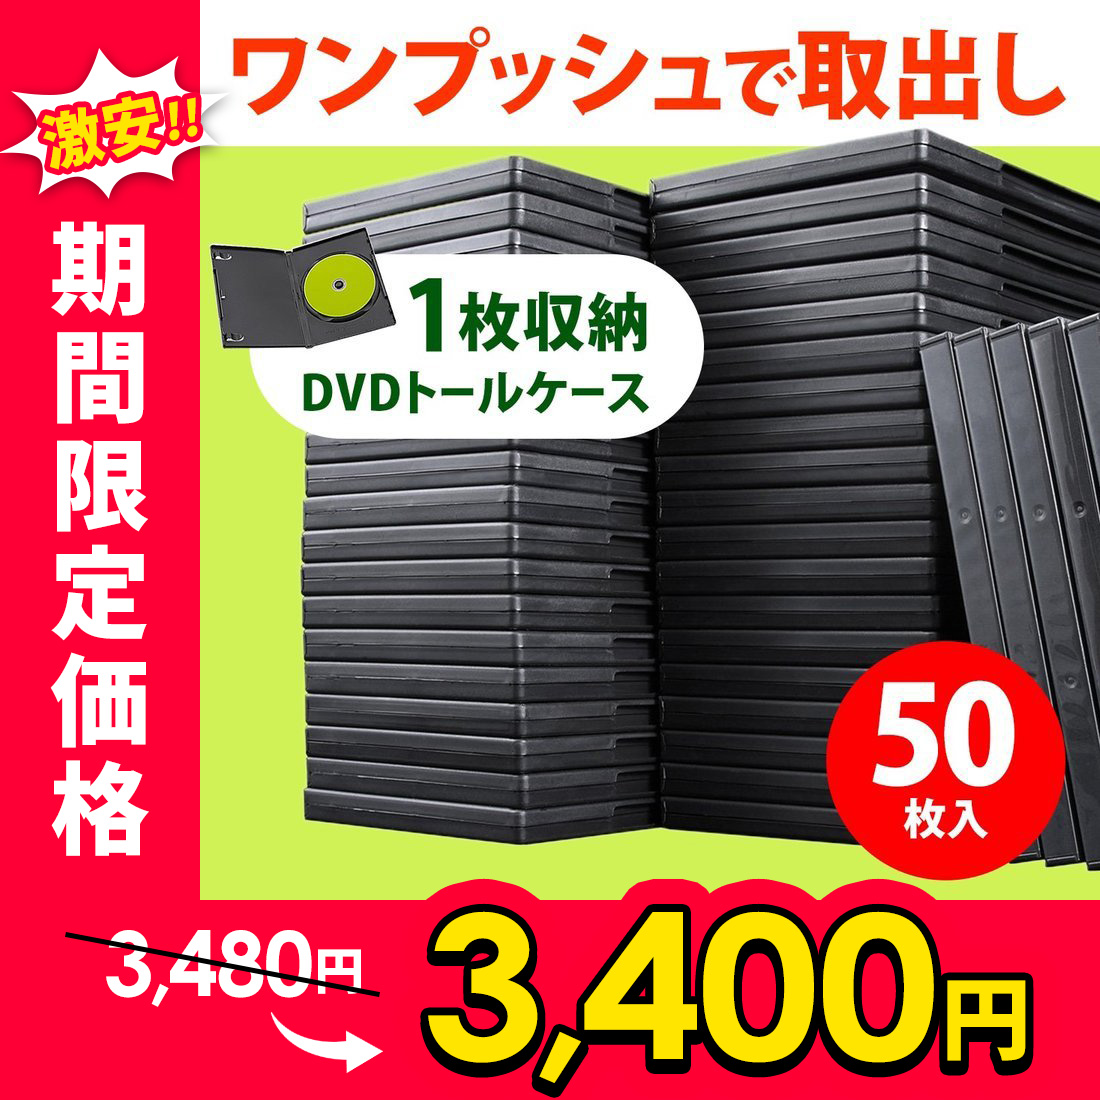 ■中古 DVD 空ケース トールタイプ (1枚収納) 黒 ブラック■2個セット